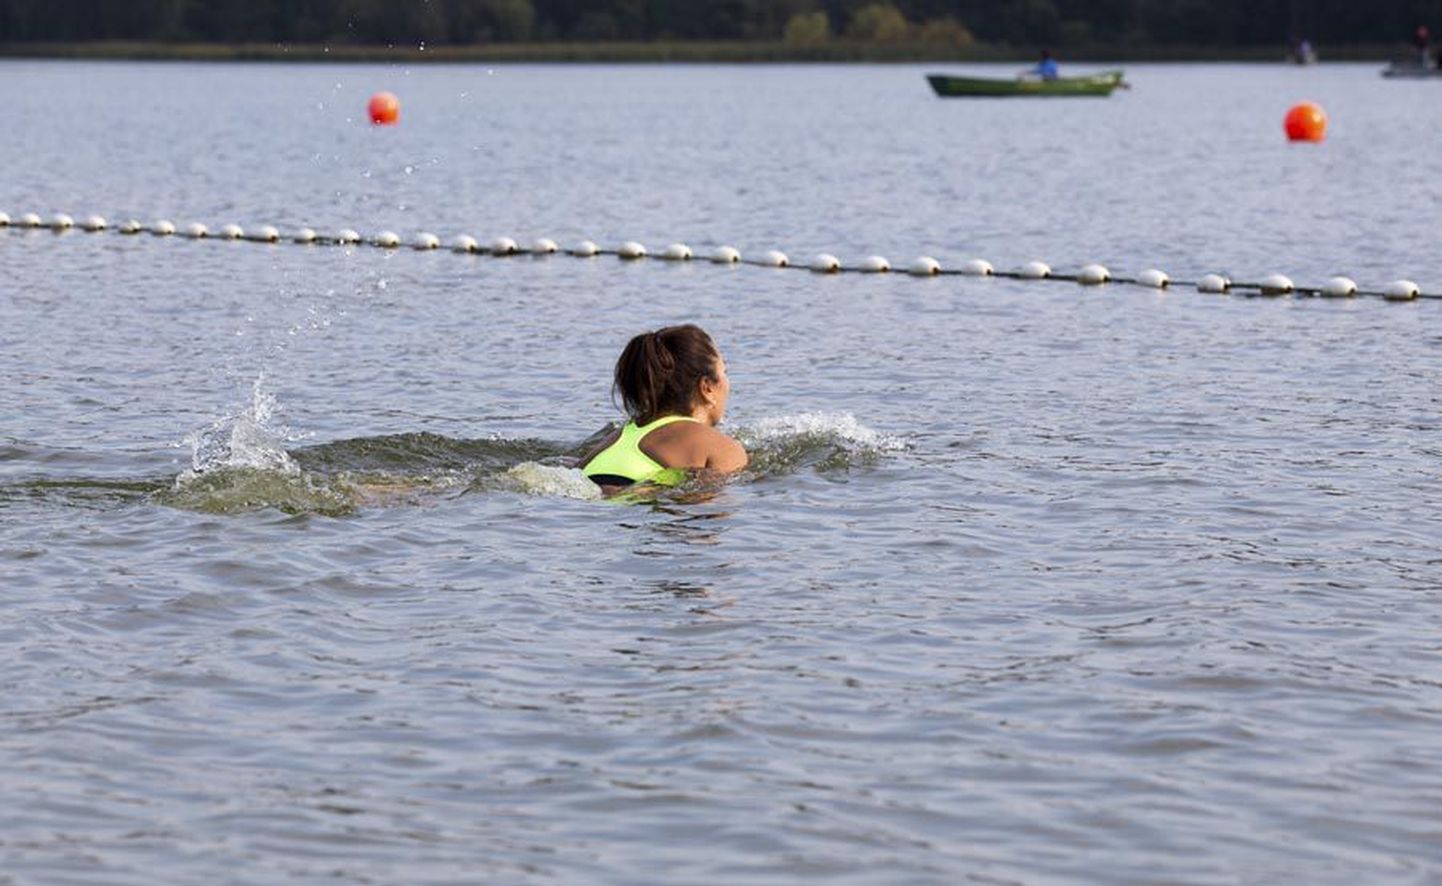 Soe september soosis nautlevat ujumist veel kuu lõpuni. Pilt on tehtud 21. septembril Viljandi järve ääres.